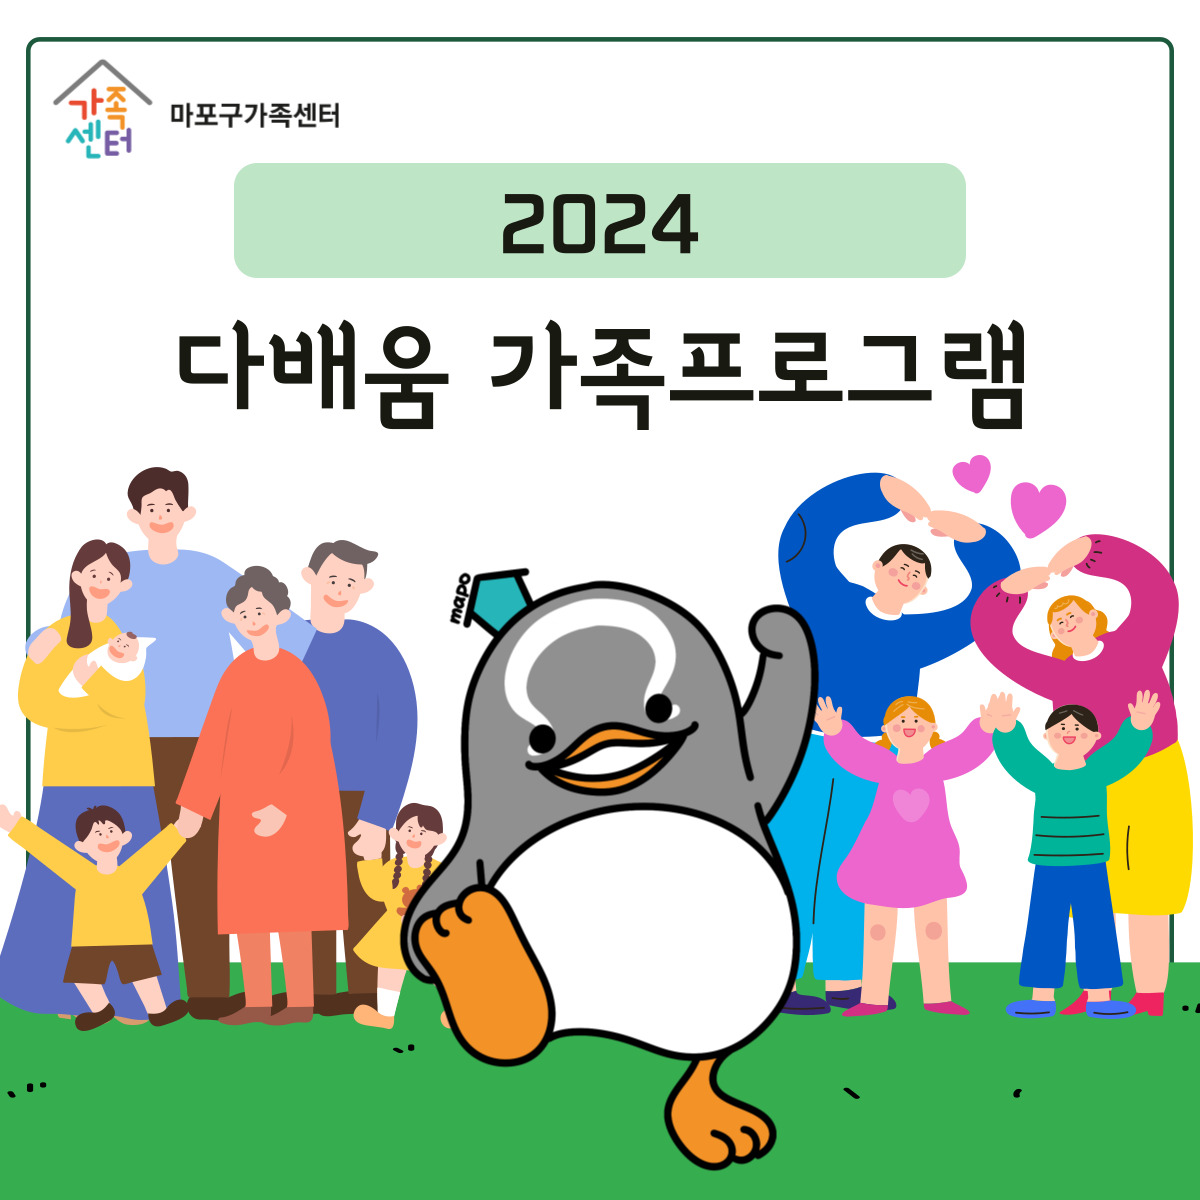 2024 다배움 사업 - 가족프로그램